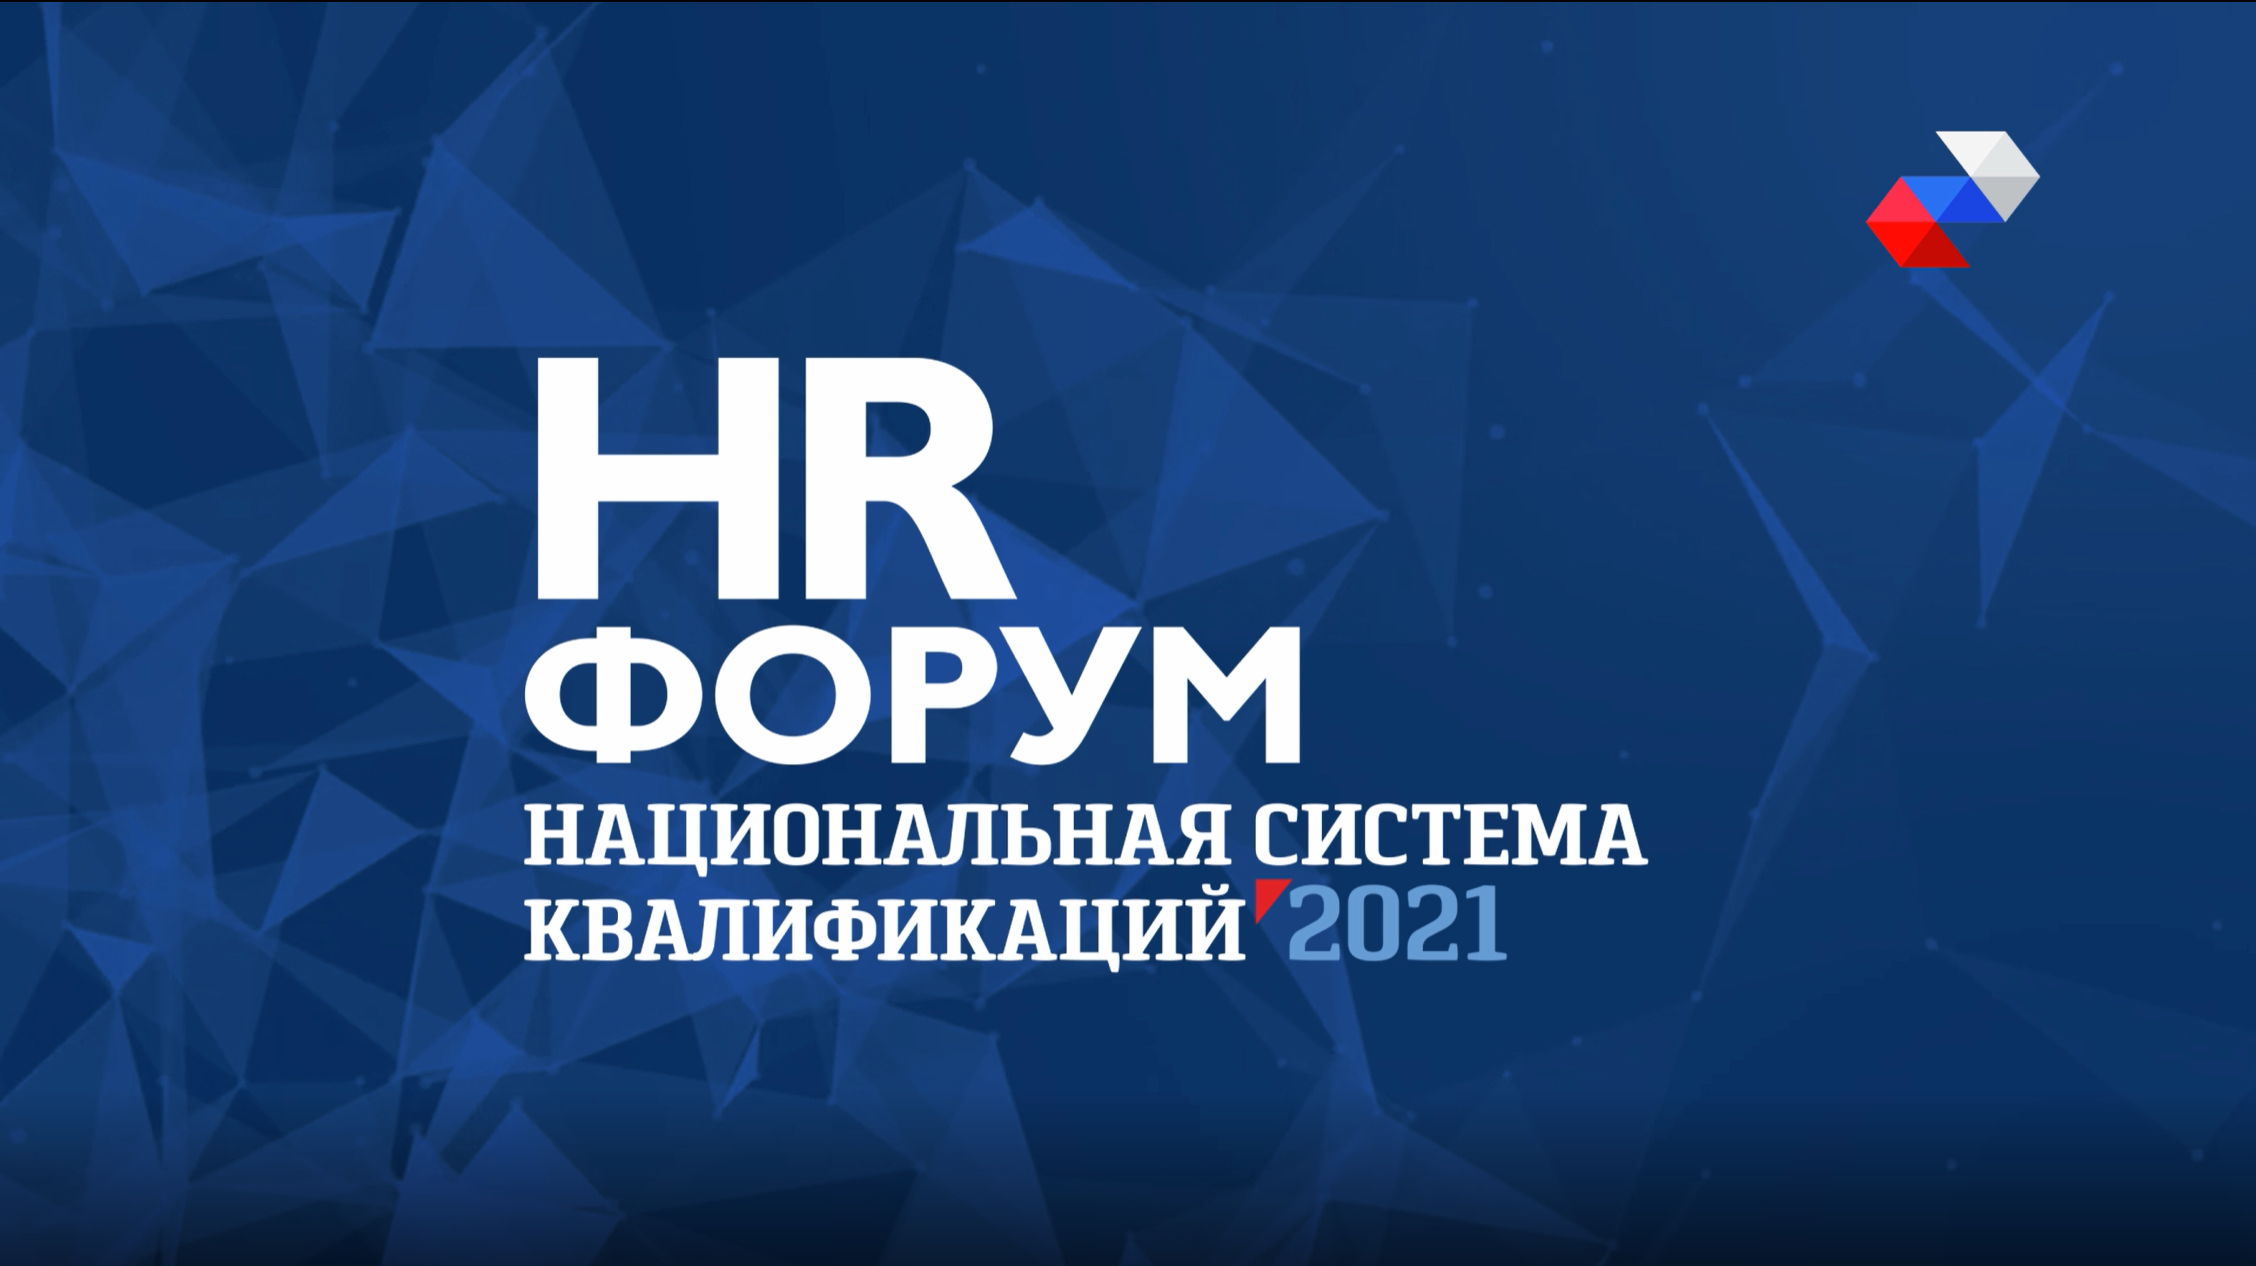 HR Форум Национальная Система Квалификаций - Онлайн